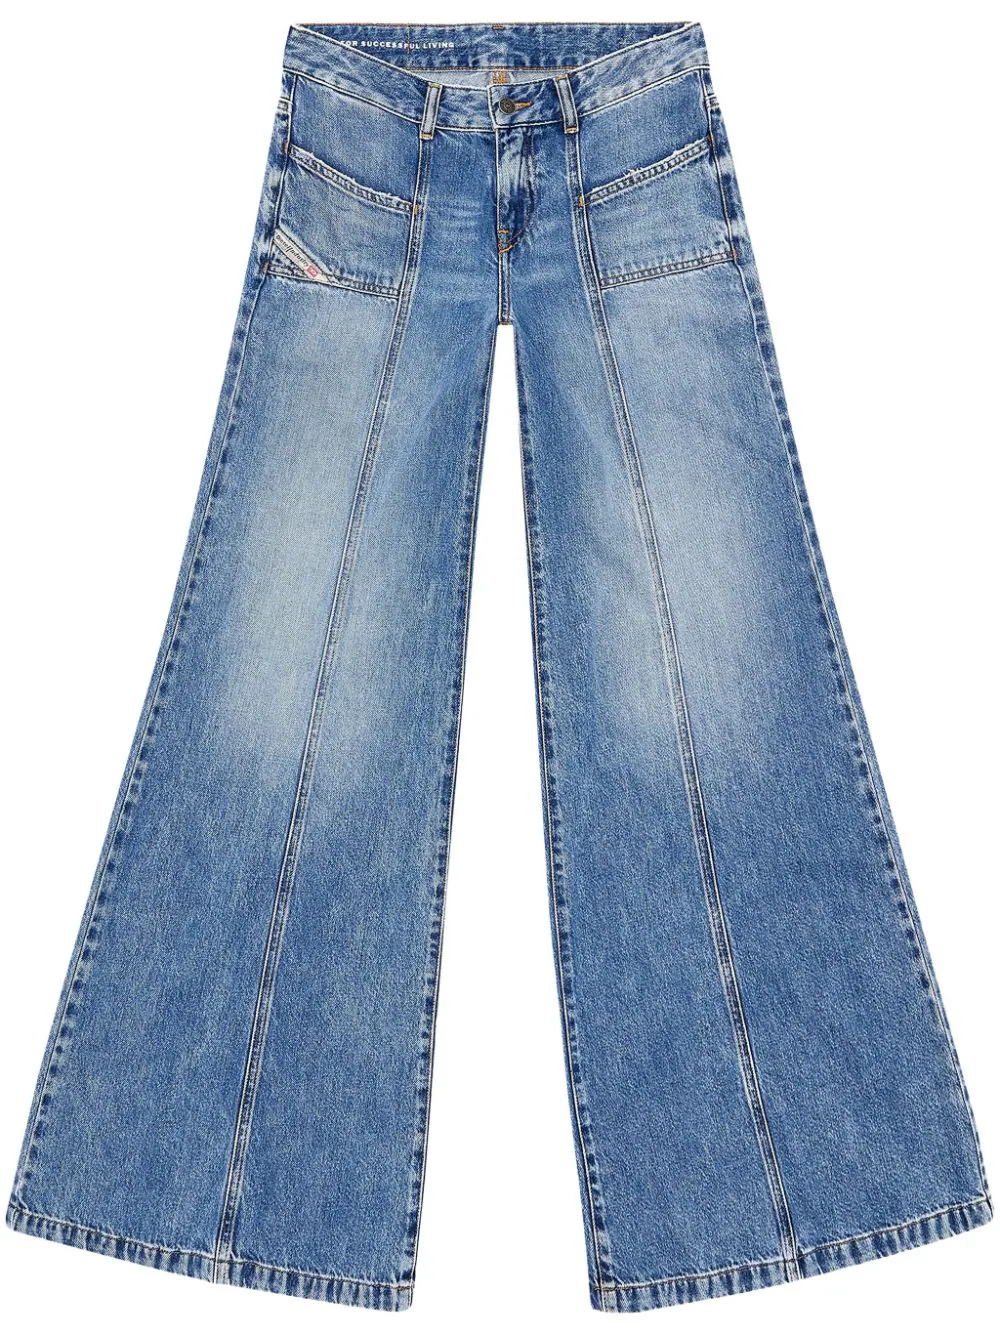 las mejores combinaciones para llevar jeans acampanados de lunes a viernes en la oficina